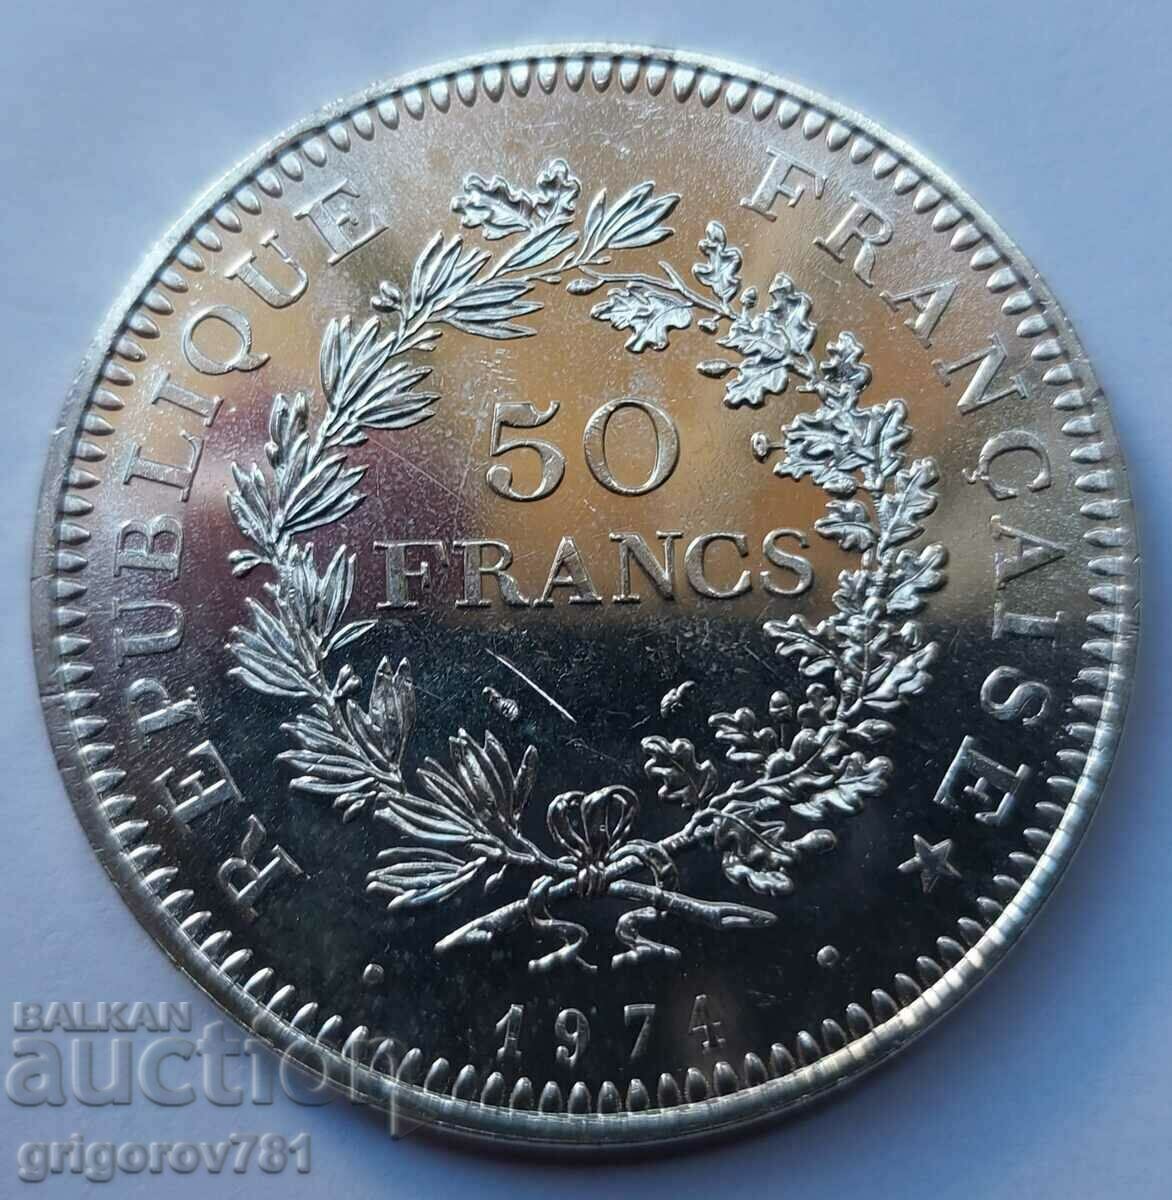 Ασήμι 50 φράγκων Γαλλία 1974 - Ασημένιο νόμισμα #7